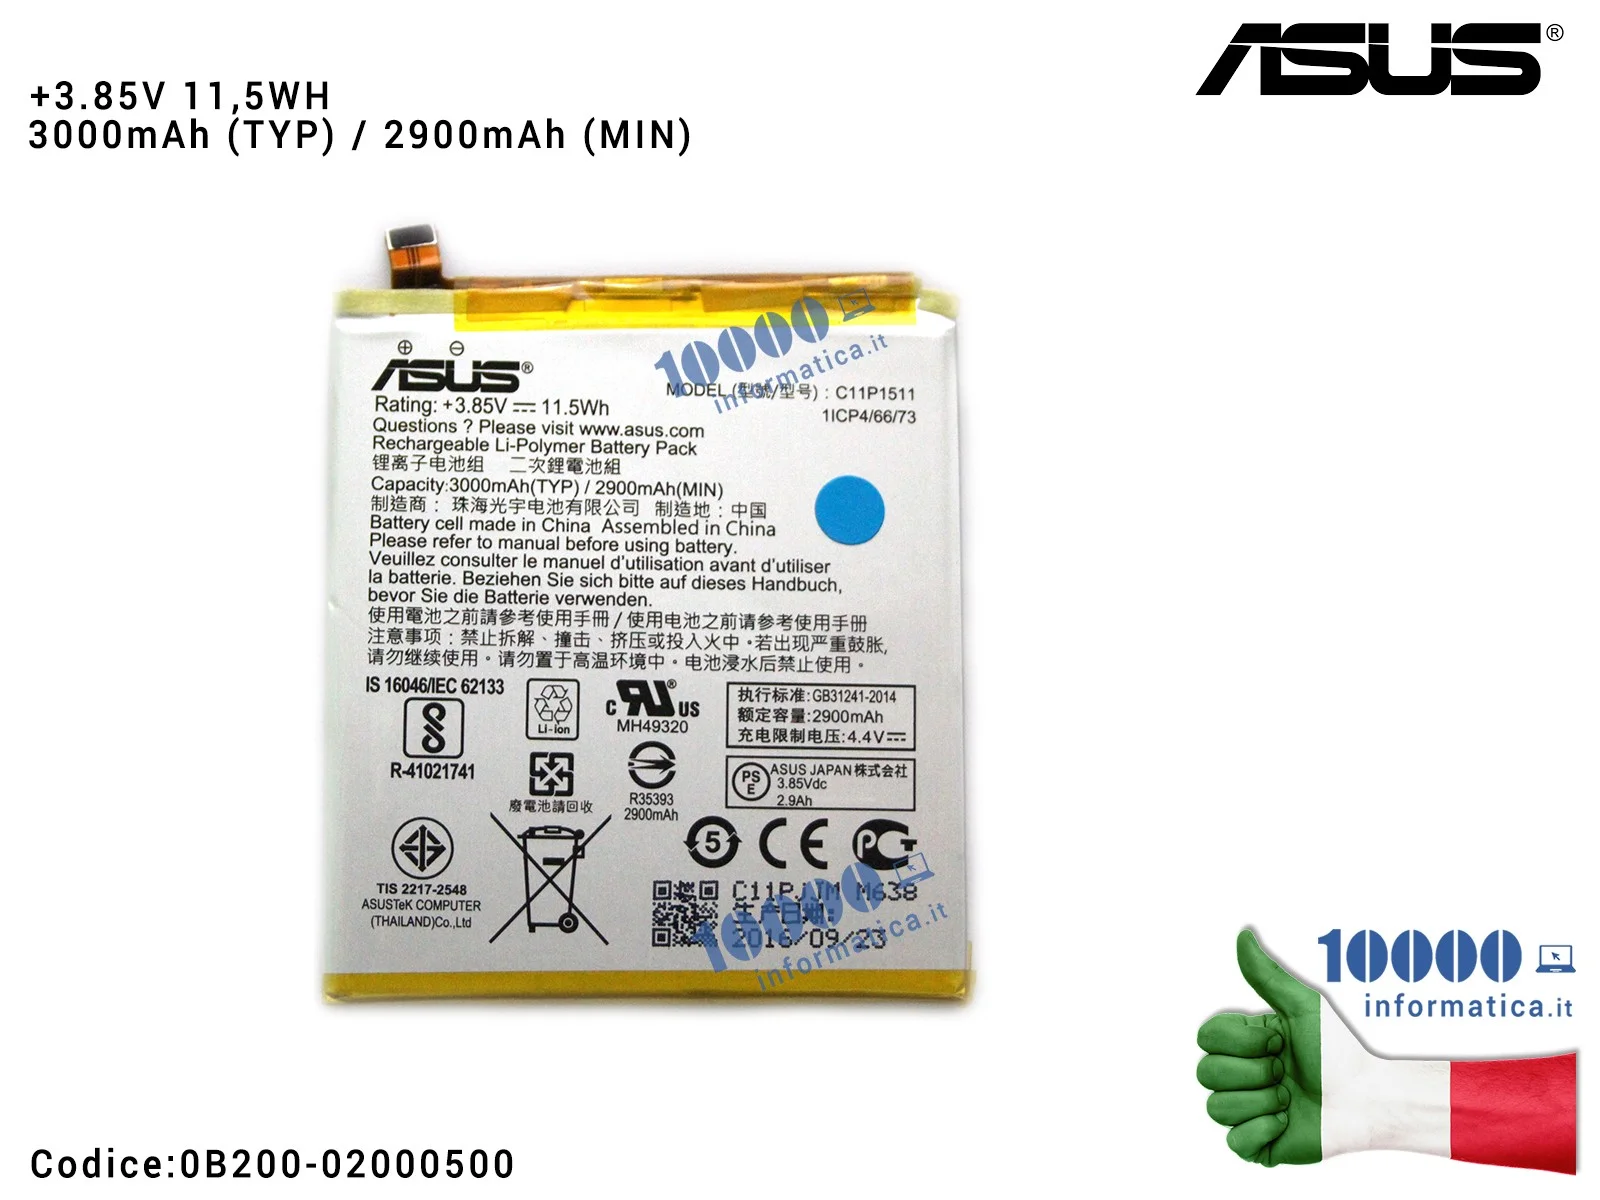 0B200-02000500 Batteria C11P1511 ASUS ZenFone 3 ZE552KL (Z012D) (Z012S) [3,85V 1,5Wh 3000mAh]